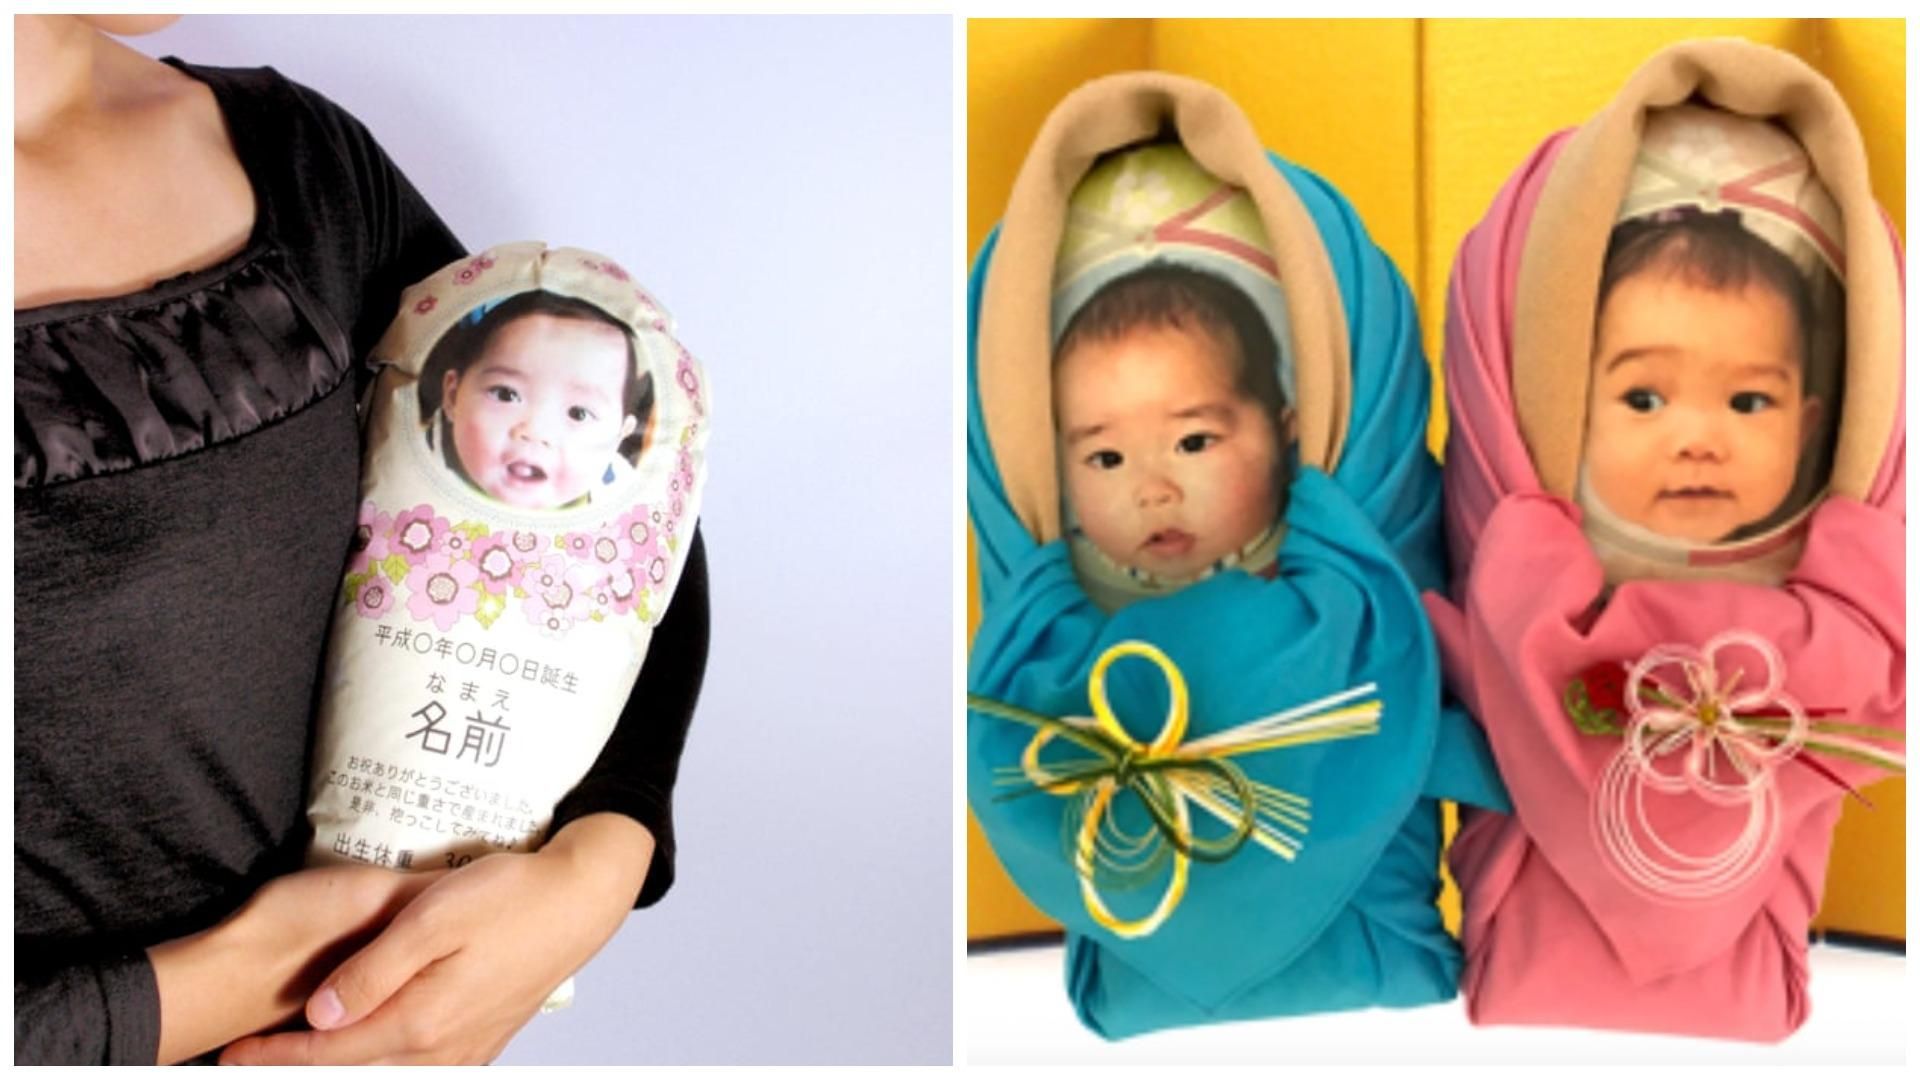 Пакет для обіймів: в Японії сім’ї надсилають родичам рисові мішечки замість новонароджених - Розваги